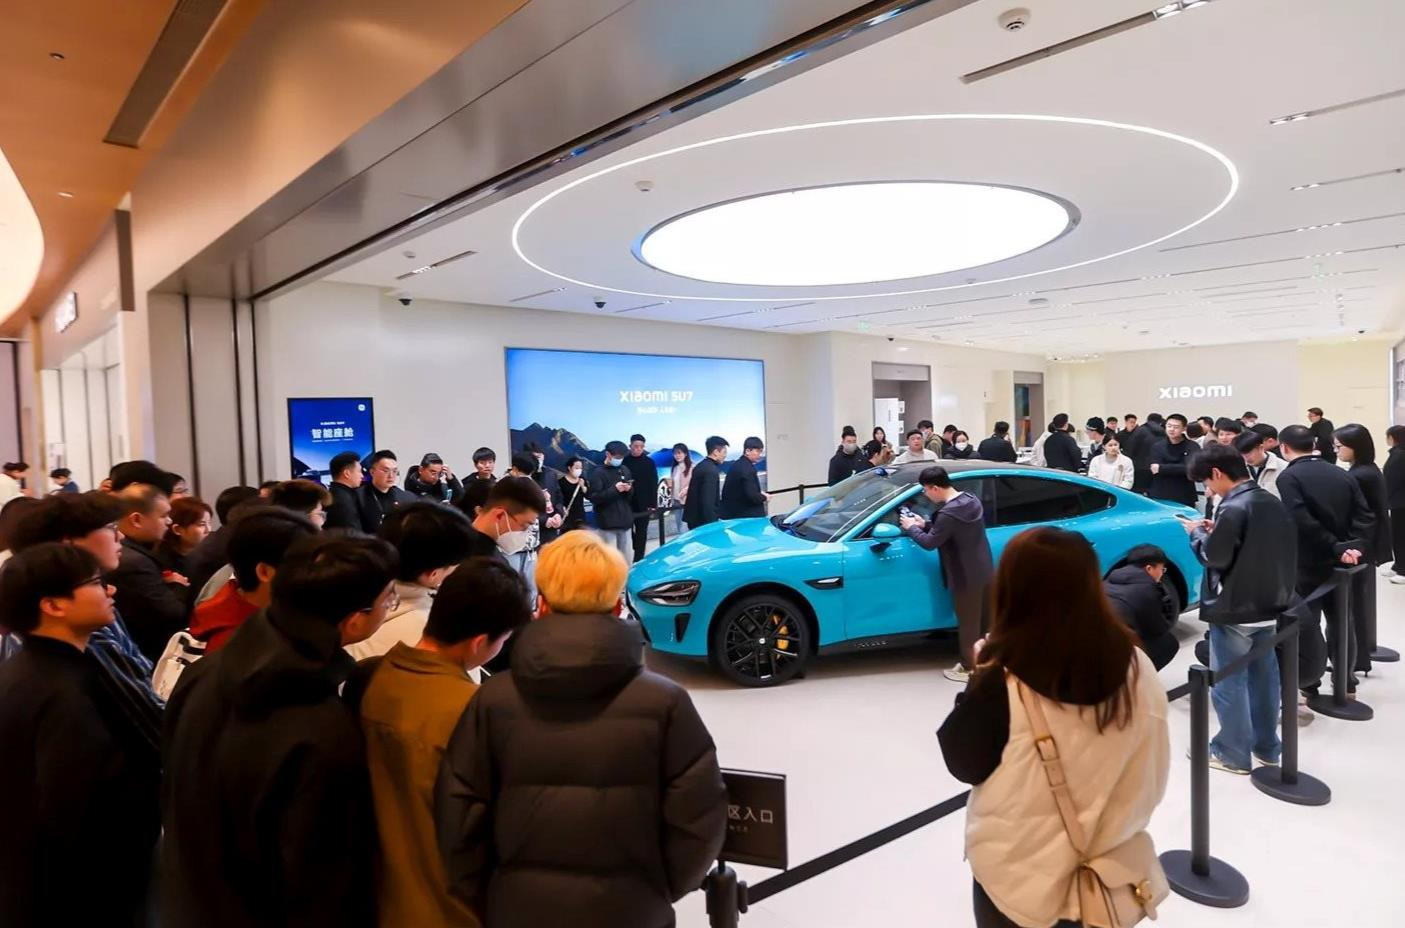 76 giây sản xuất ra một chiếc SU7, 27 phút mở bán đạt doanh số 50.000 xe - Đây là sự đáng sợ của một Xiaomi vừa 'chân ướt chân ráo' gia nhập thị trường ô tô điện- Ảnh 2.